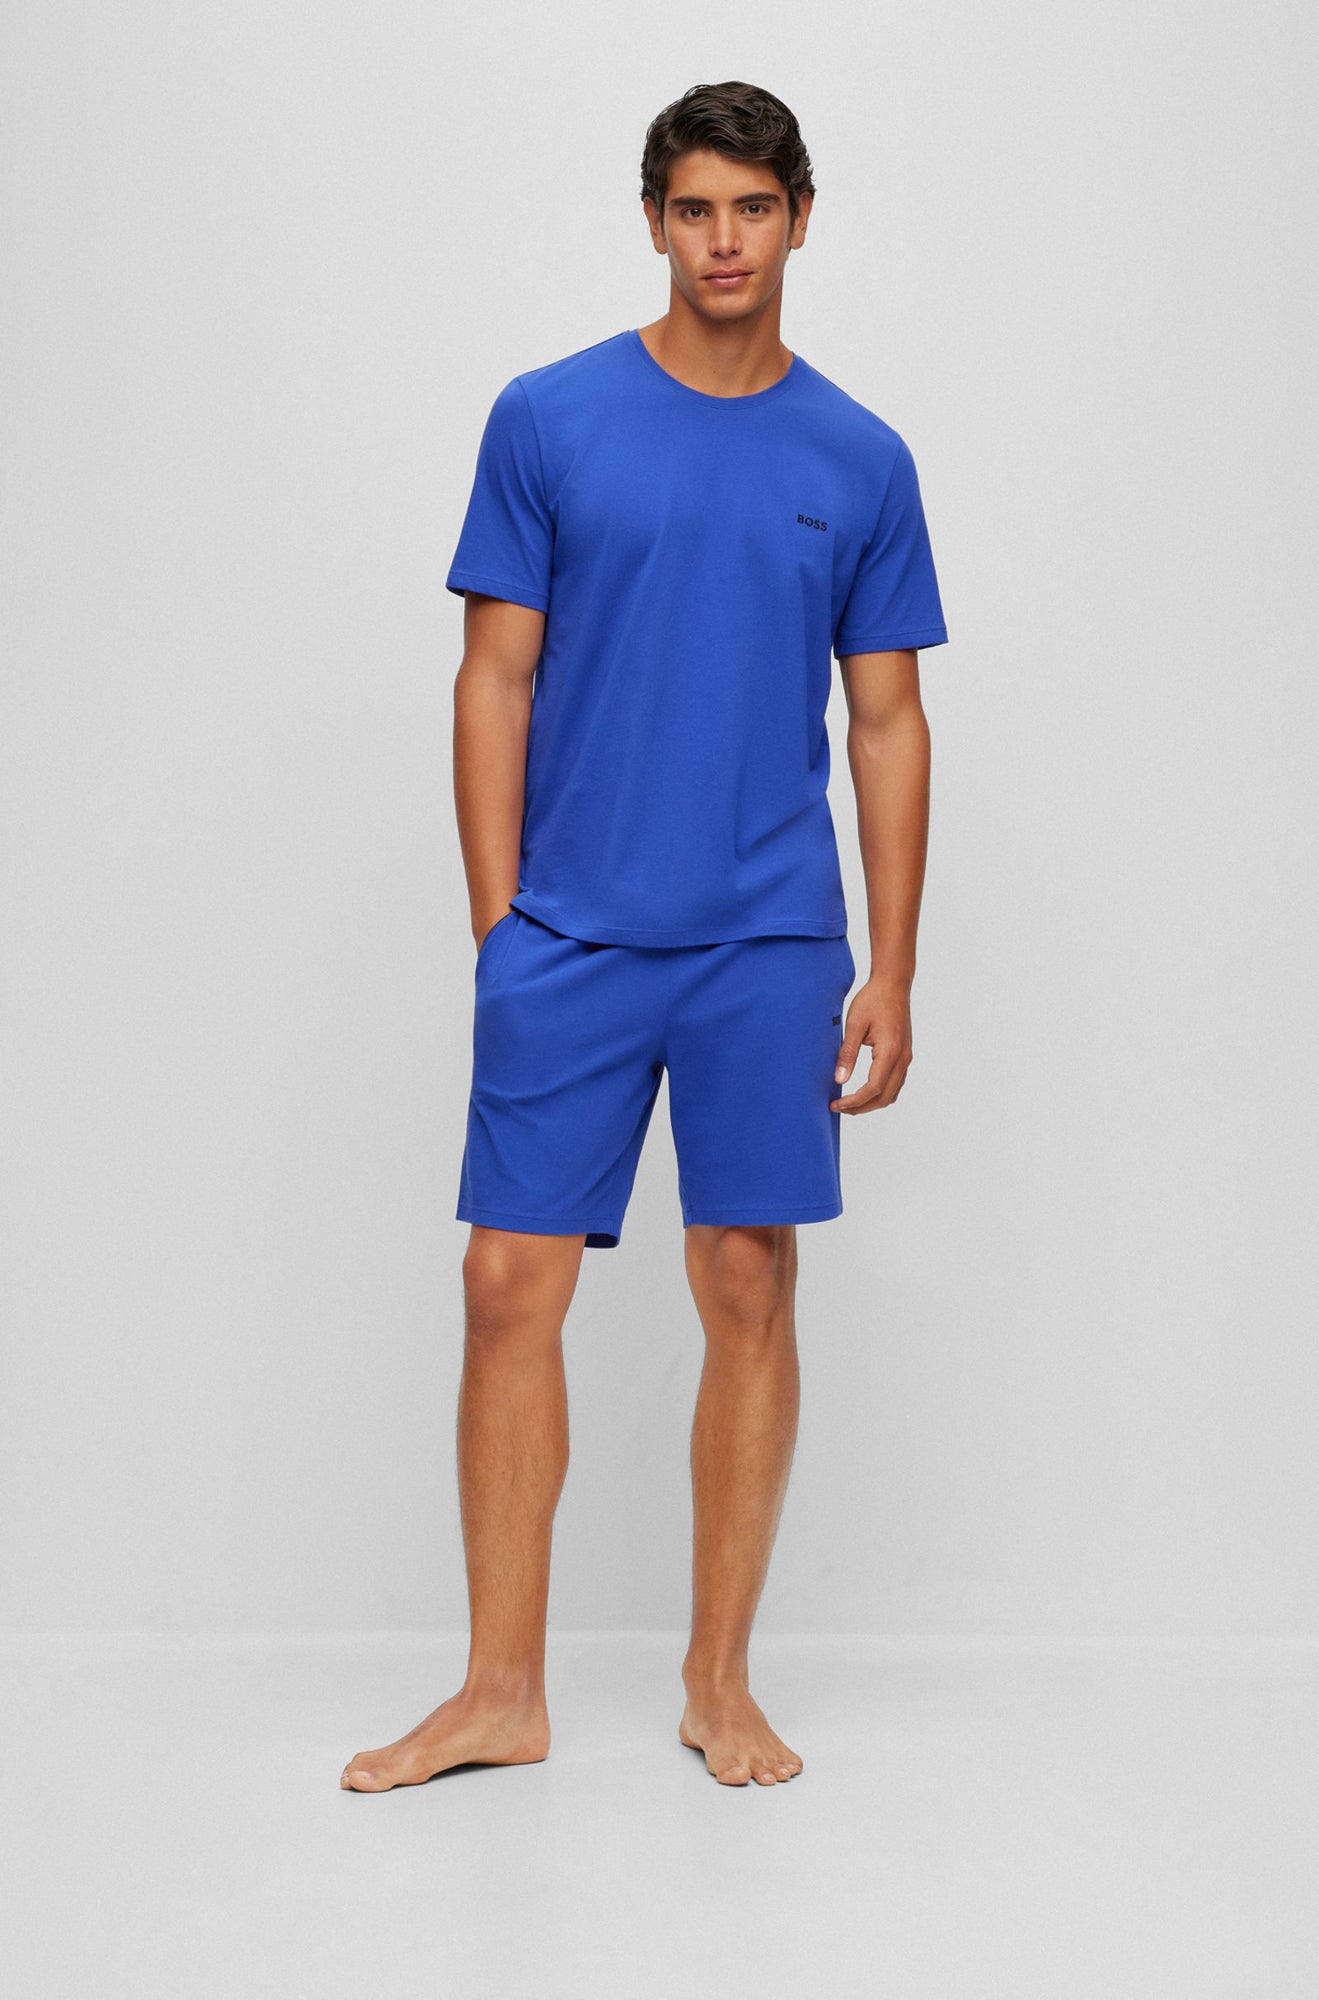 Bermuda pour homme par HUGO BOSS | 50469612 Bleu pâle/434-BRIGHT BLUE | Boutique Vvög, vêtements mode pour homme et femme